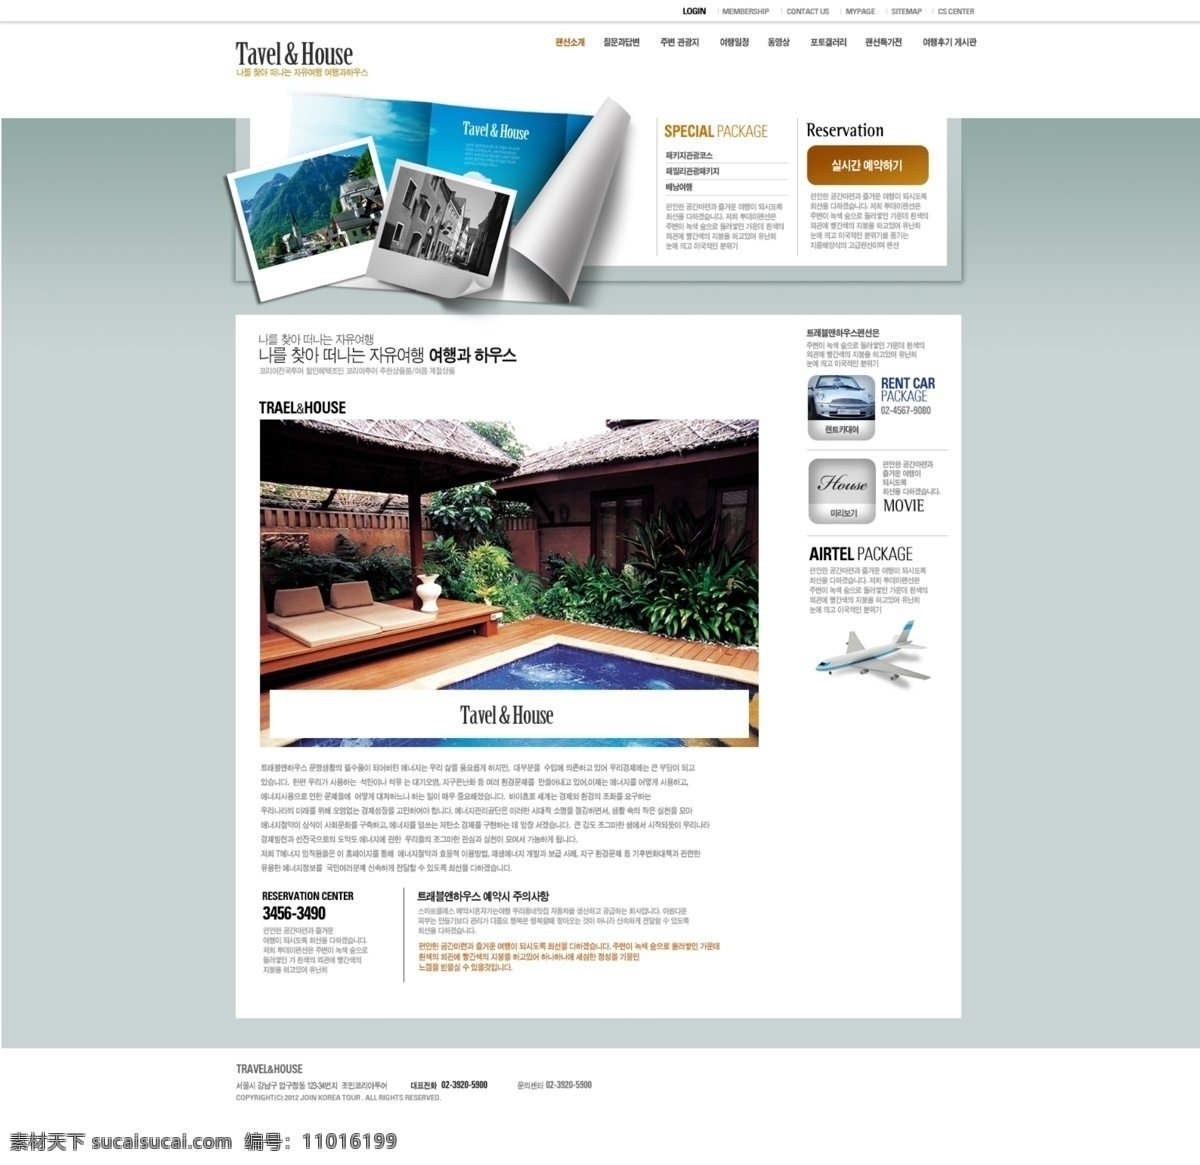 旅行 住店 网页 模板 网页设计 网站模板 网站 网页模板 网页素材